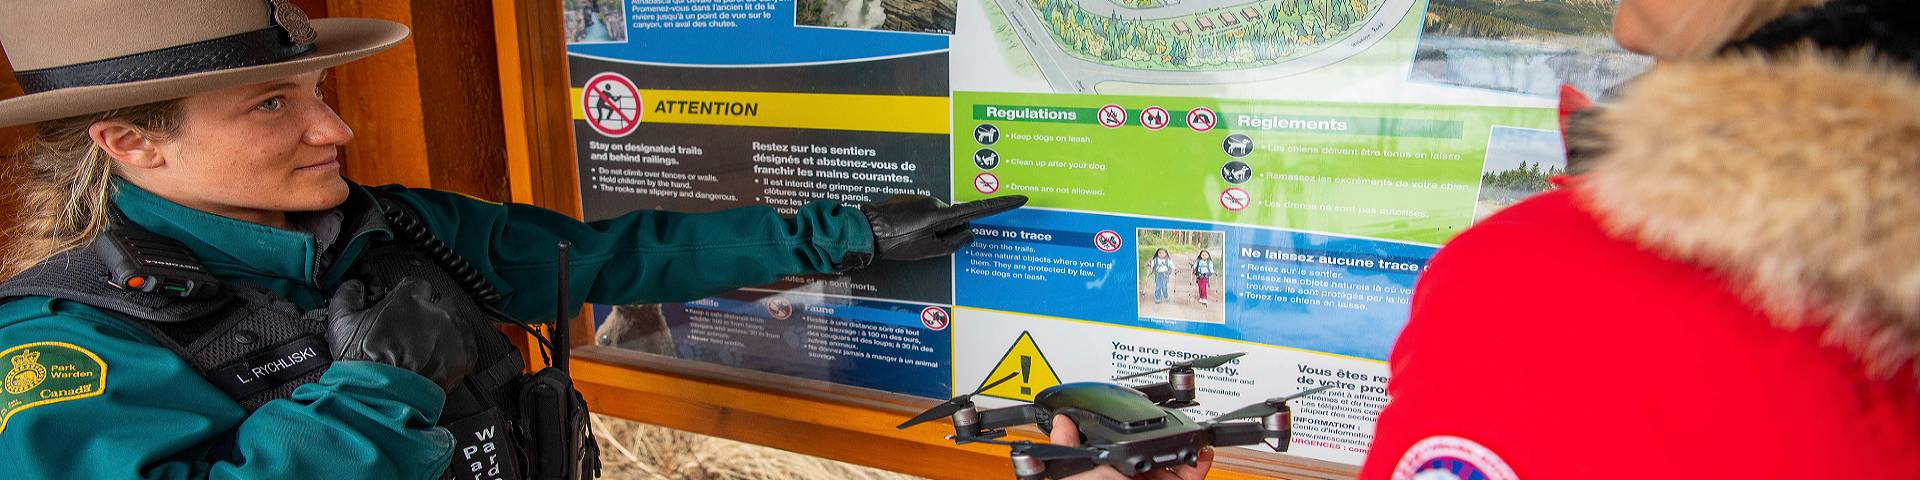 Un gardien de parc explique à un visiteur que les drones sont interdits